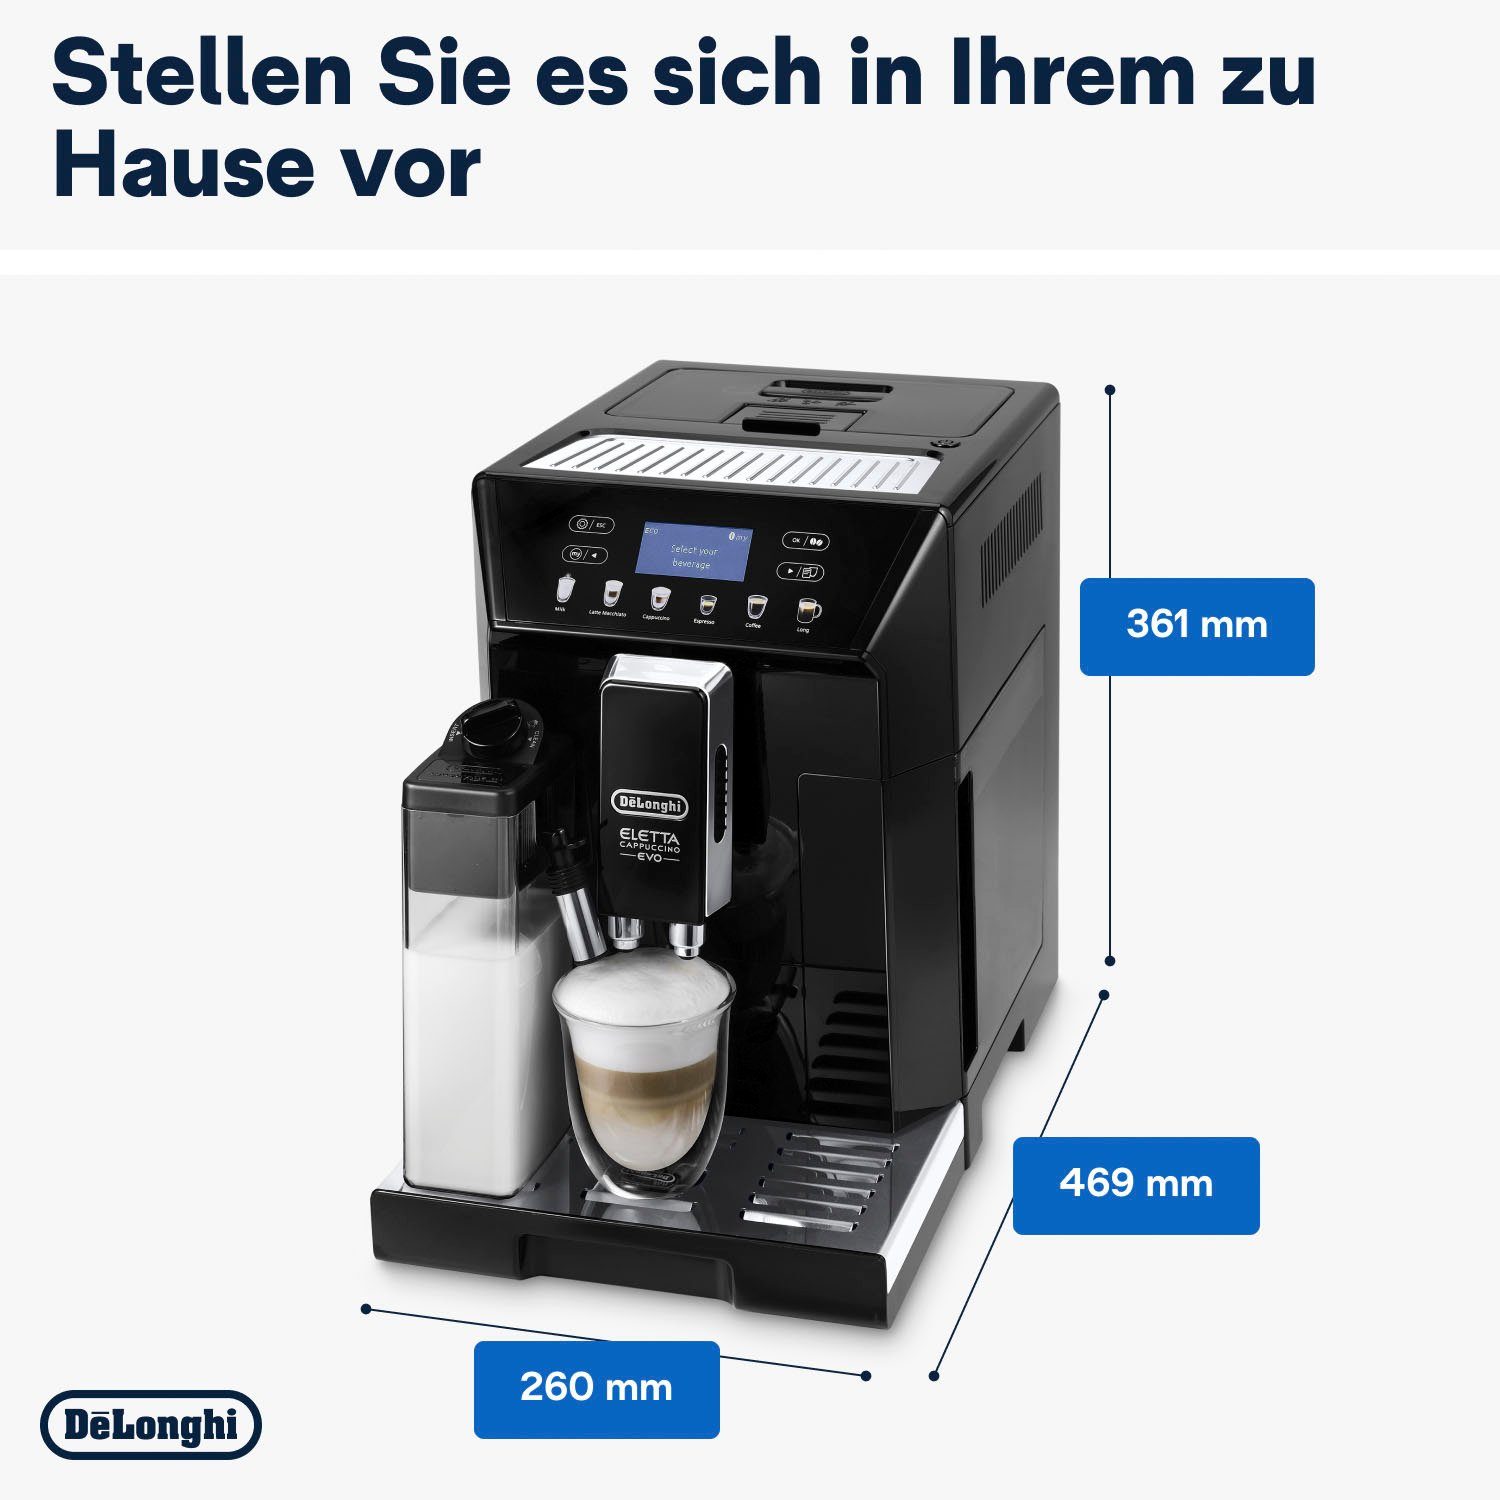 Wert Eletta Kaffeevollautomat inkl. 46.860.B Evo, UVP De'Longhi im ECAM 31,99 schwarz, € Pflegeset von